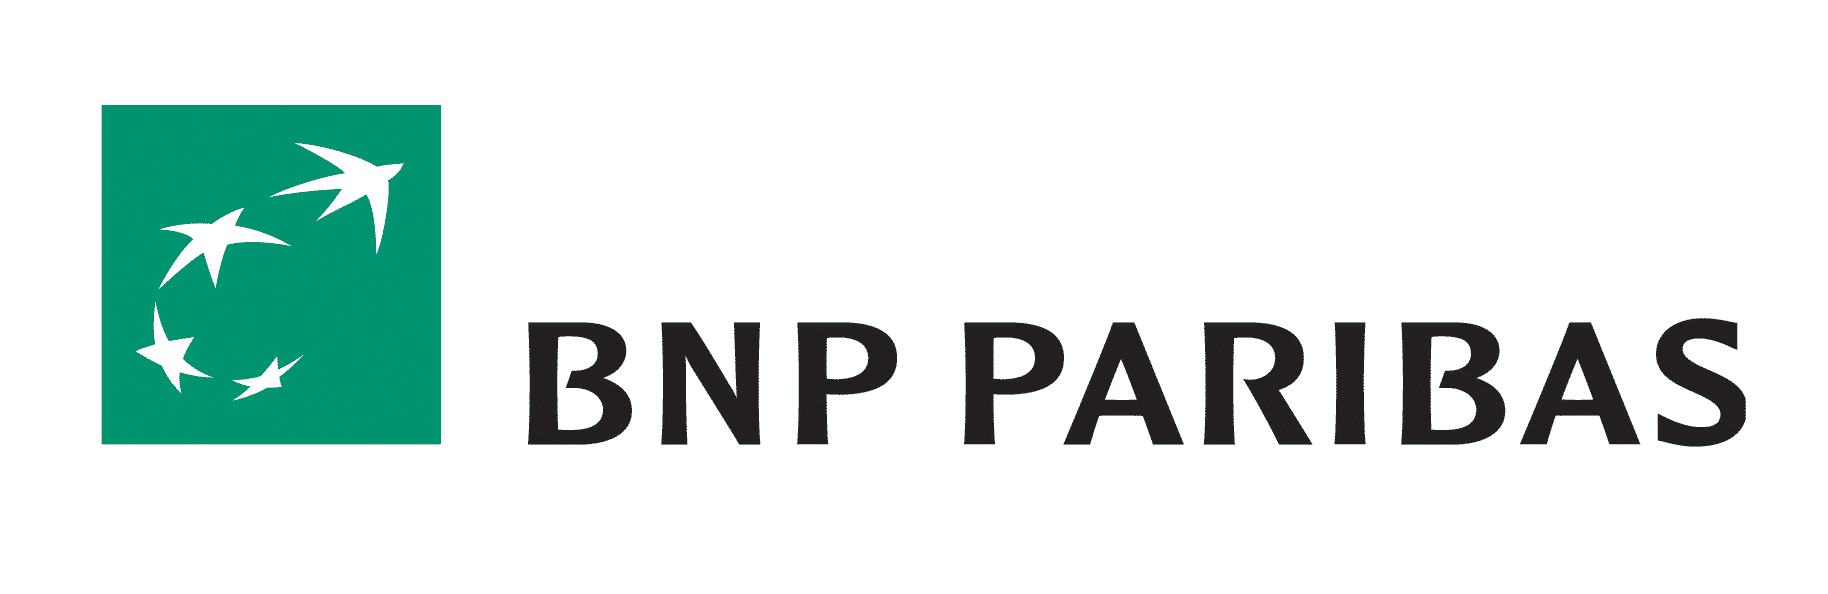 BNP Paribas Logo - bnp-paribas-logo - MondoBrain